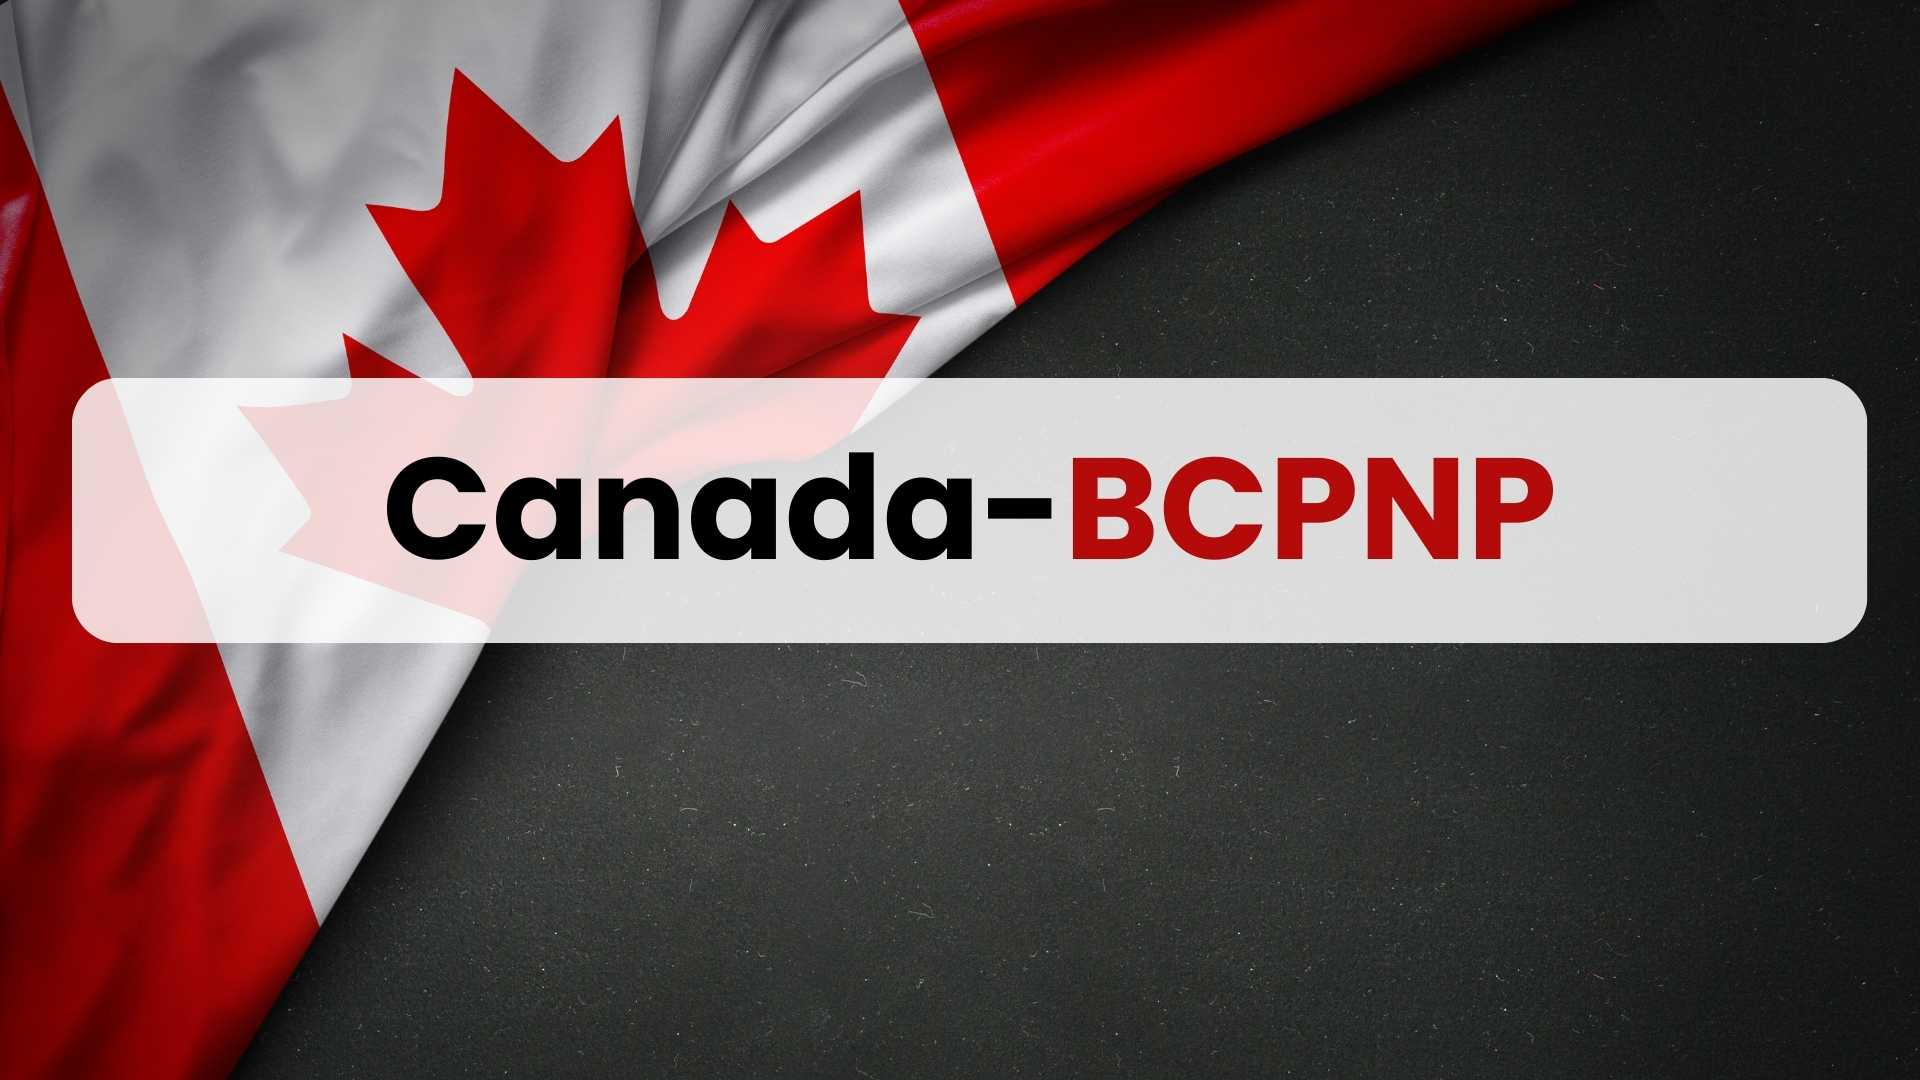 Canada-BCPNP (British Columbia Provincial Nominee Program)